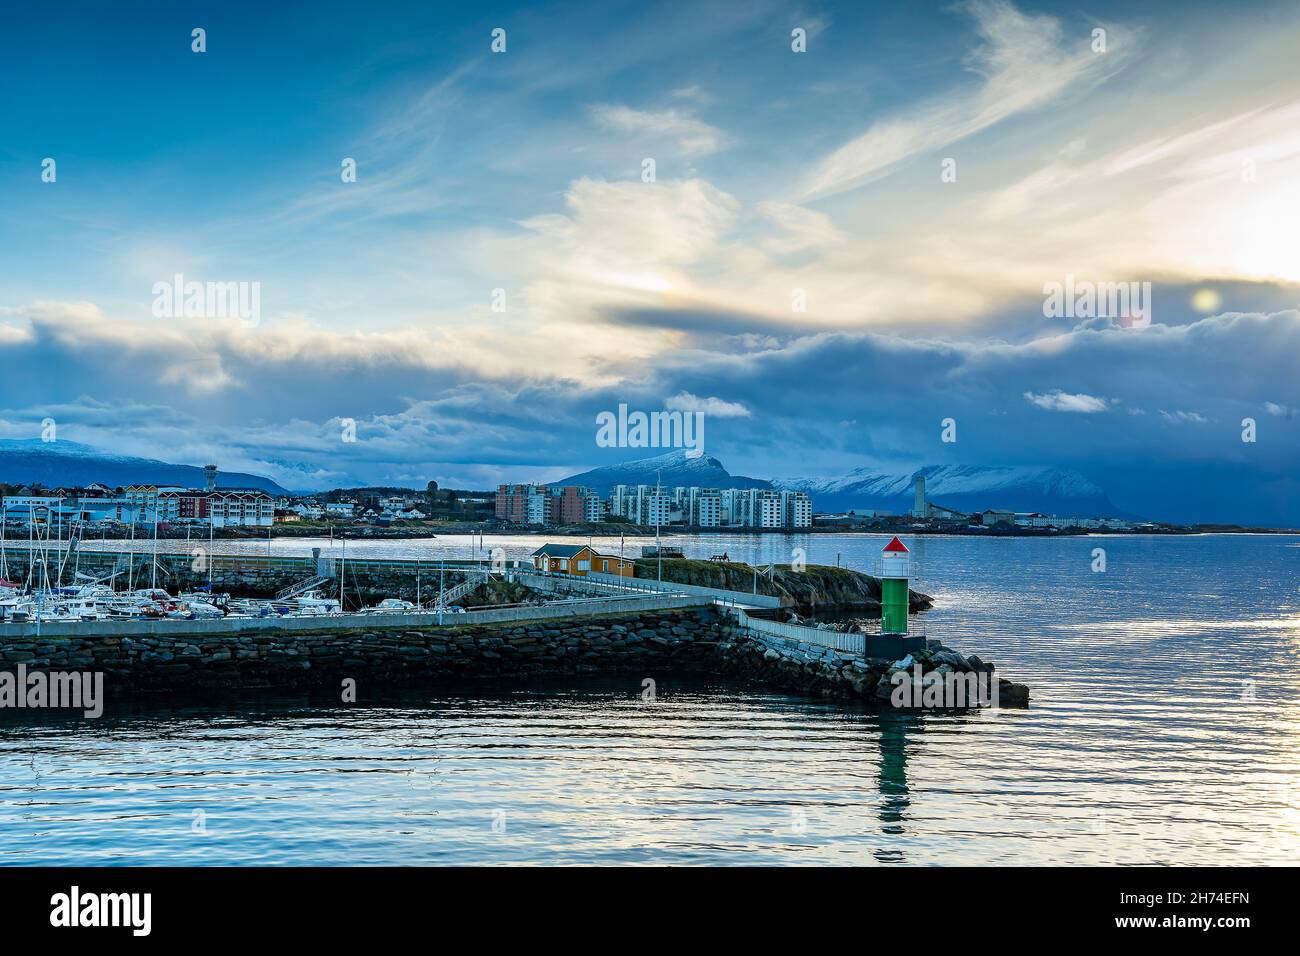 Leuchtfeuer vor Bodø in Norwegen. Herbst, Wetter mit blauem Himmel und Wolken einer Sturmfront. Farbige, neue Wohnblocks am Ufer und Jachthafen Stock Photo